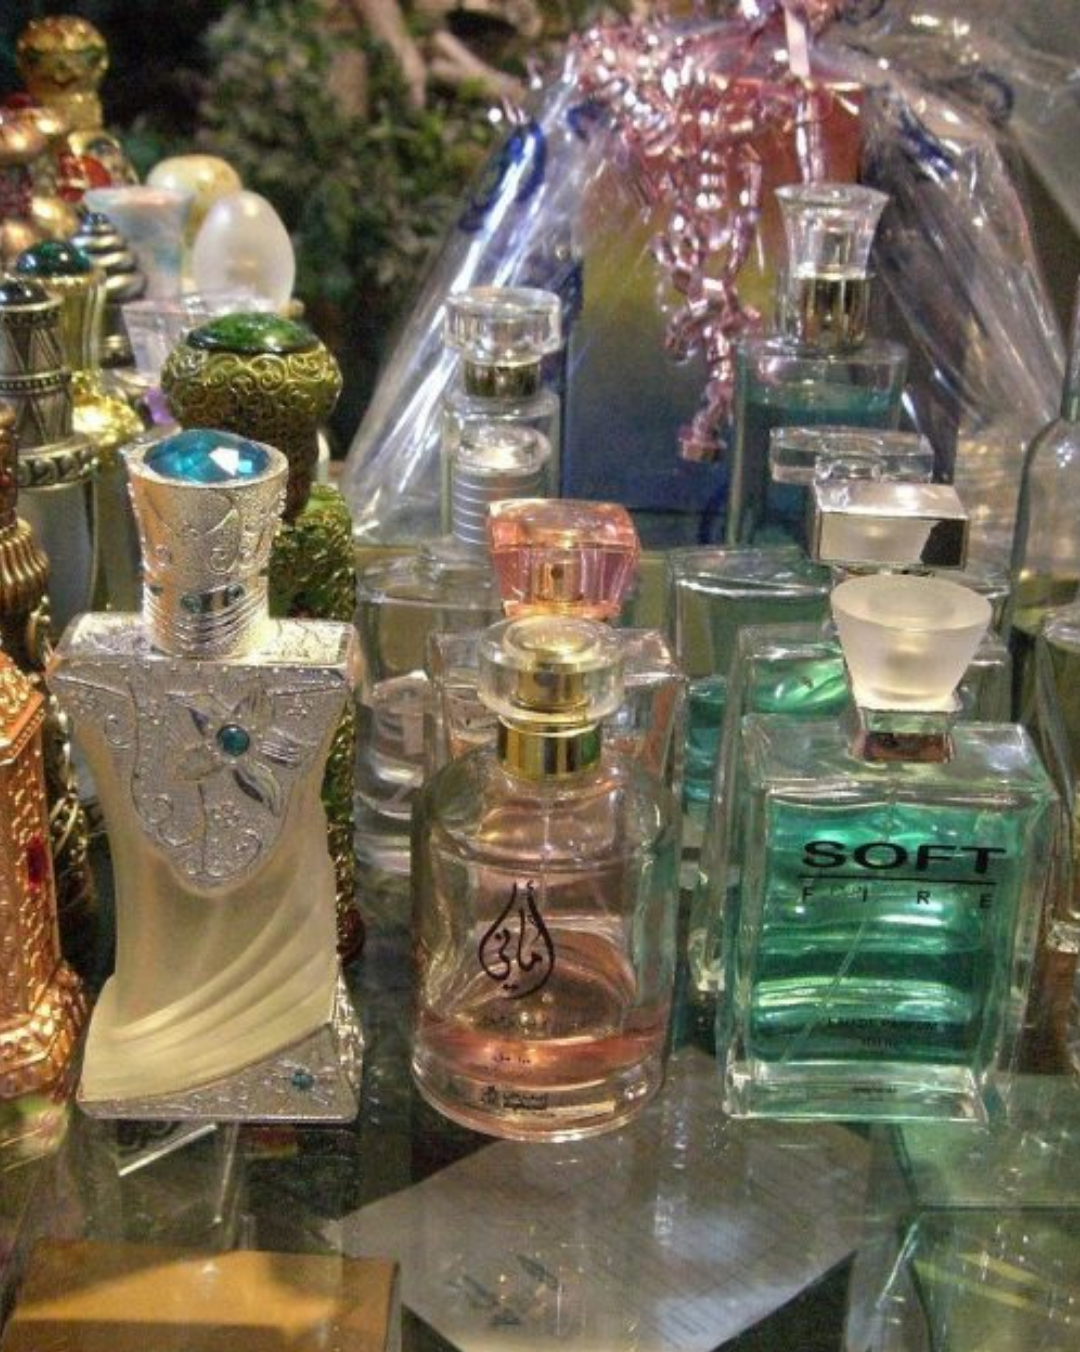 Arabian perfumes